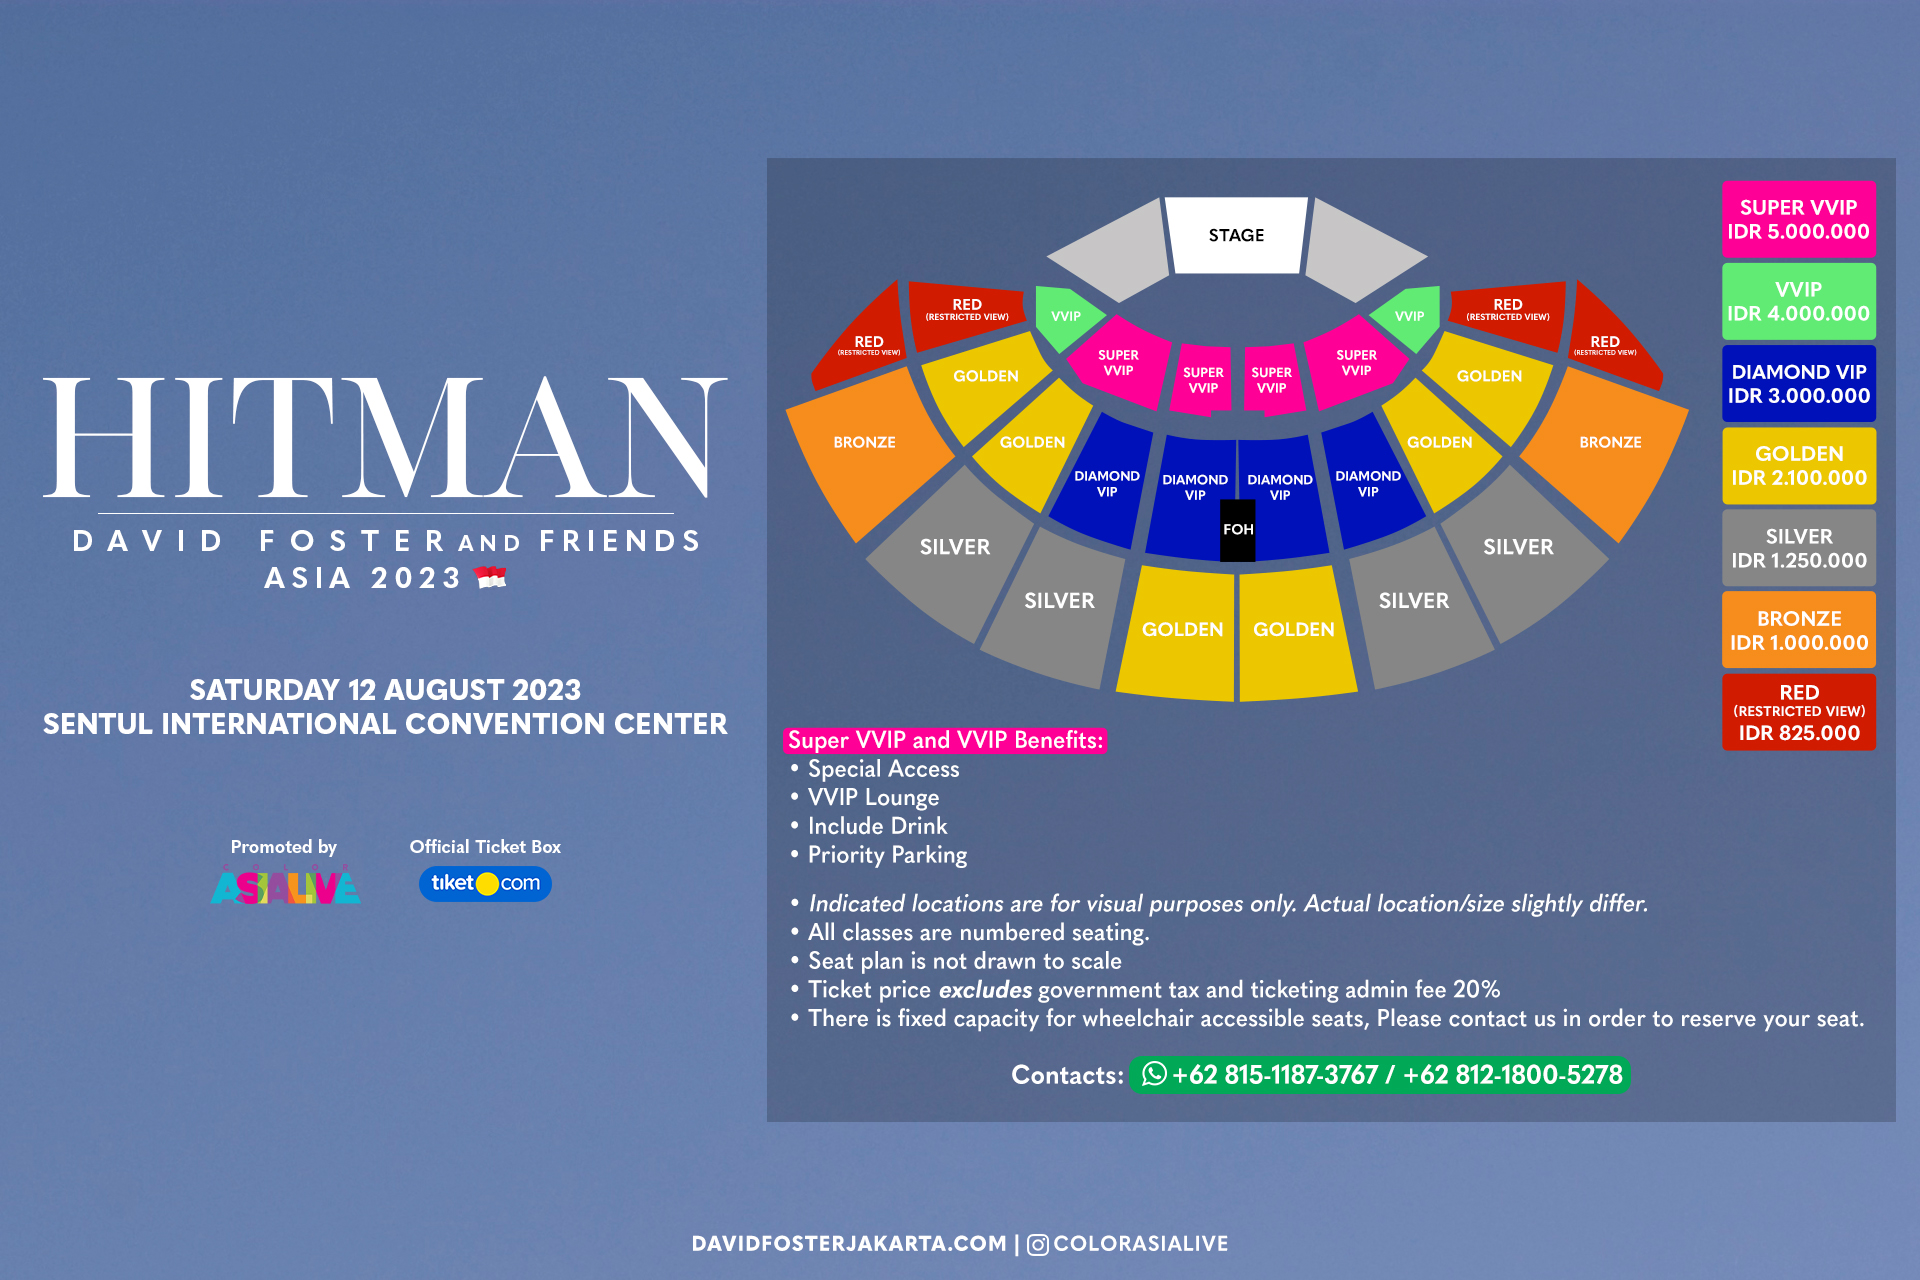 Seatplan konser David Foster. (Sumber gambar : Tiket.com)